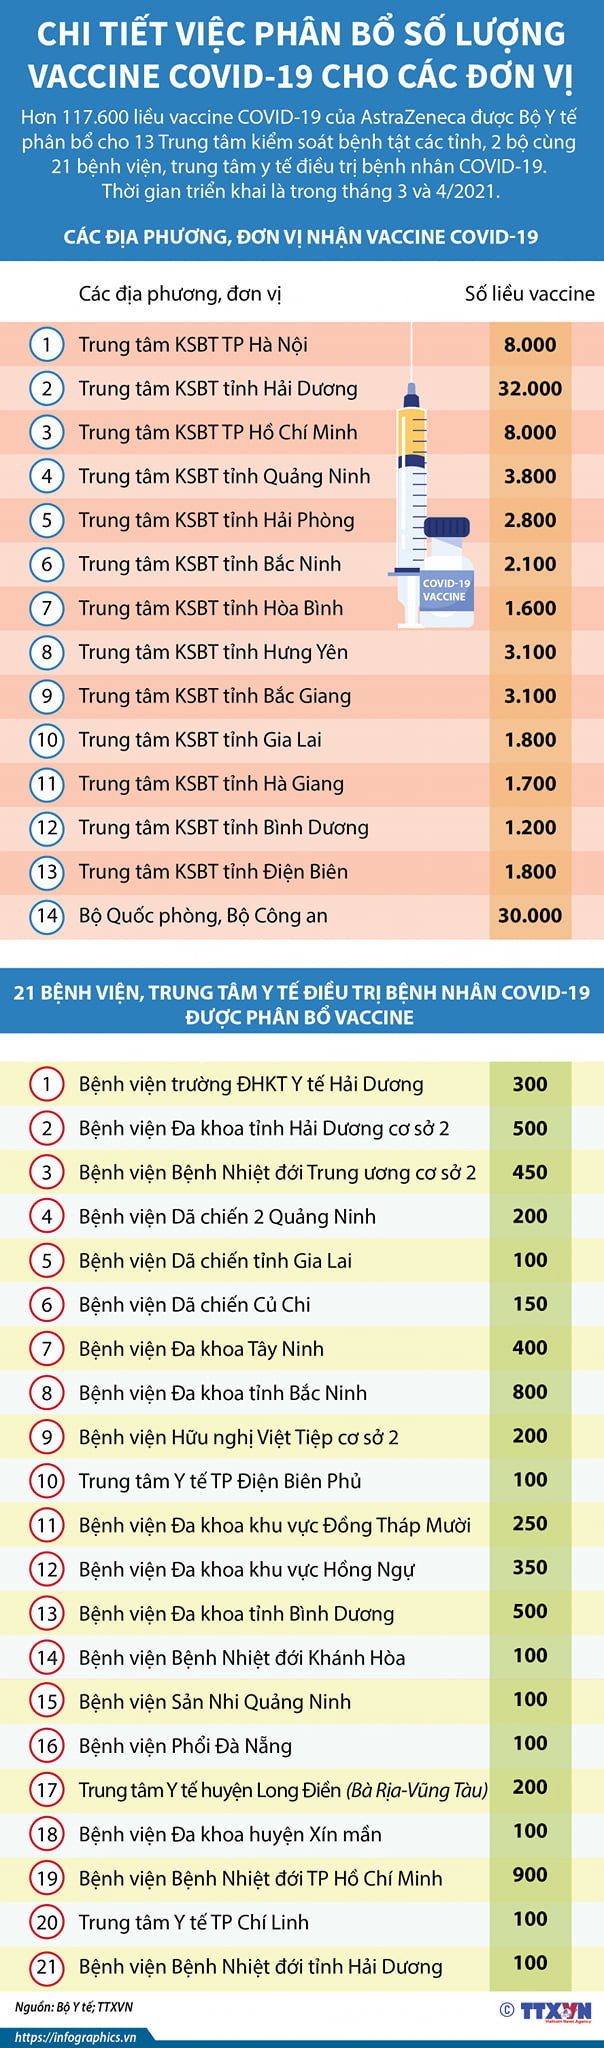 Điểm tiêm vaccine COVID-19 đầu tiên ở Hà Nội sẵn sàng cho 100 người được tiêm sáng 8/3 - Ảnh 5.